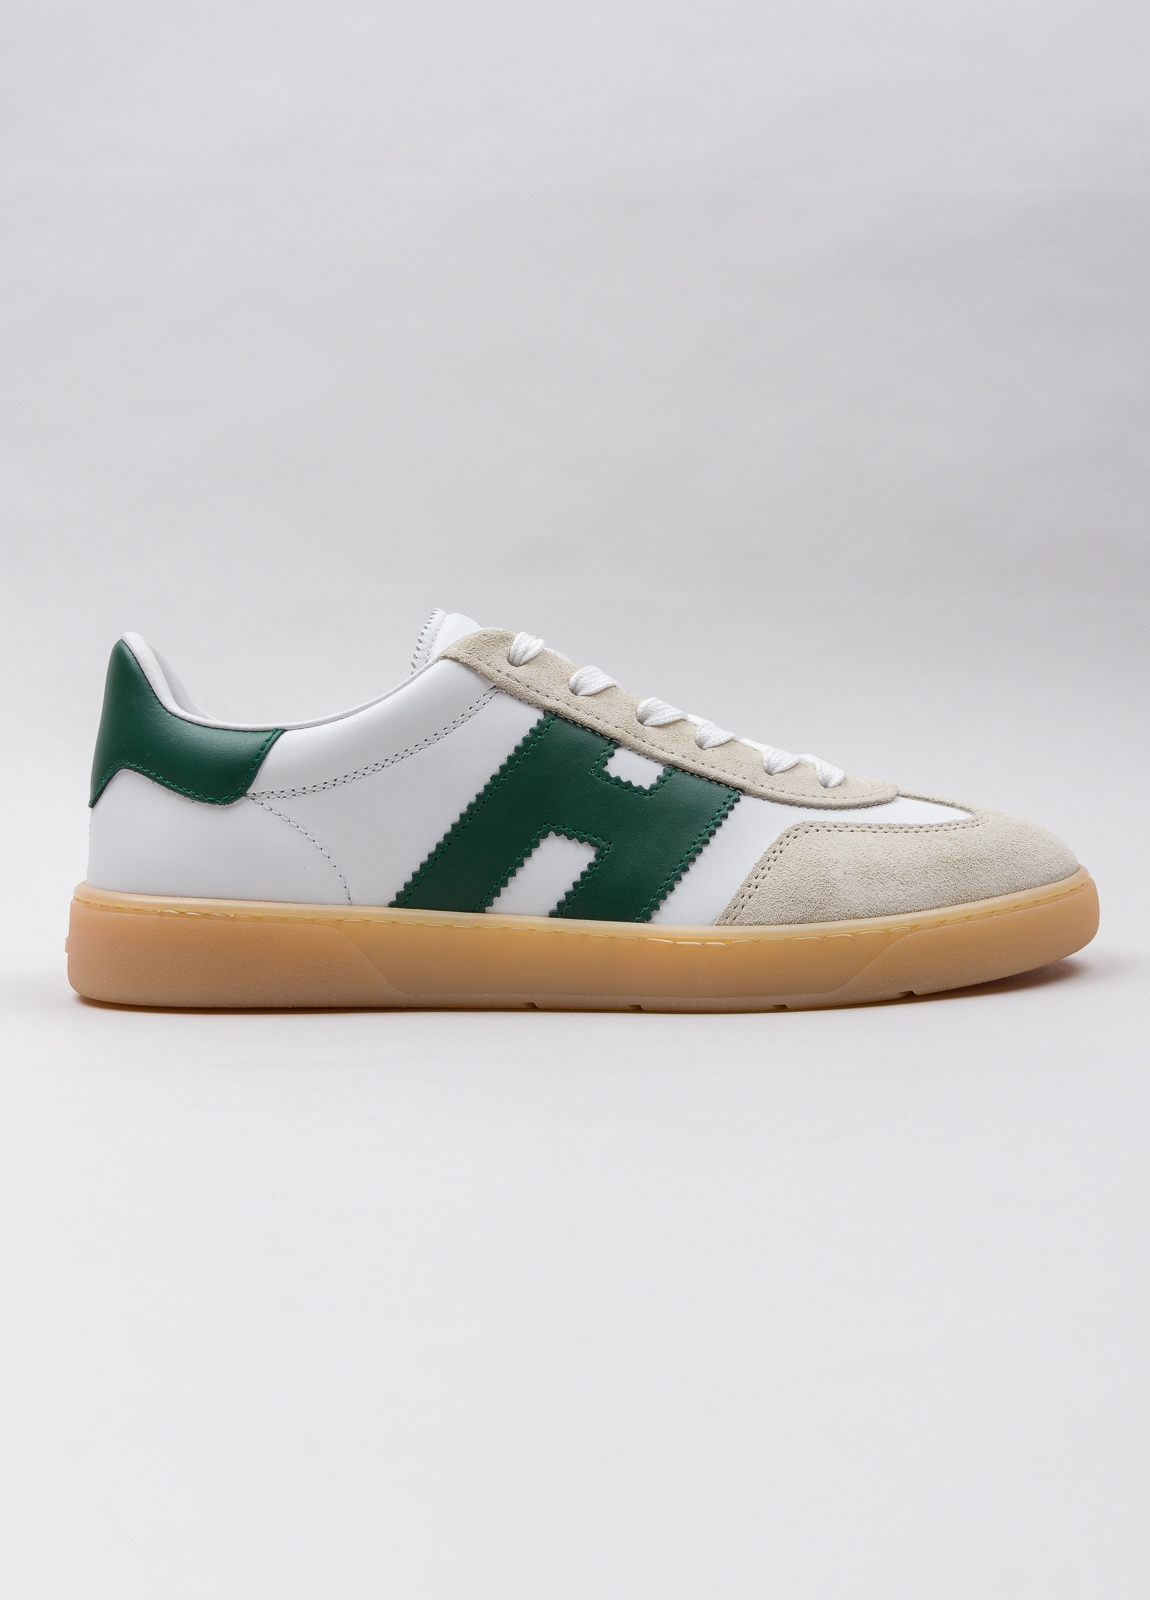 Zapatillas deportivas HOGAN color blanco, beige y verde - Ítem3